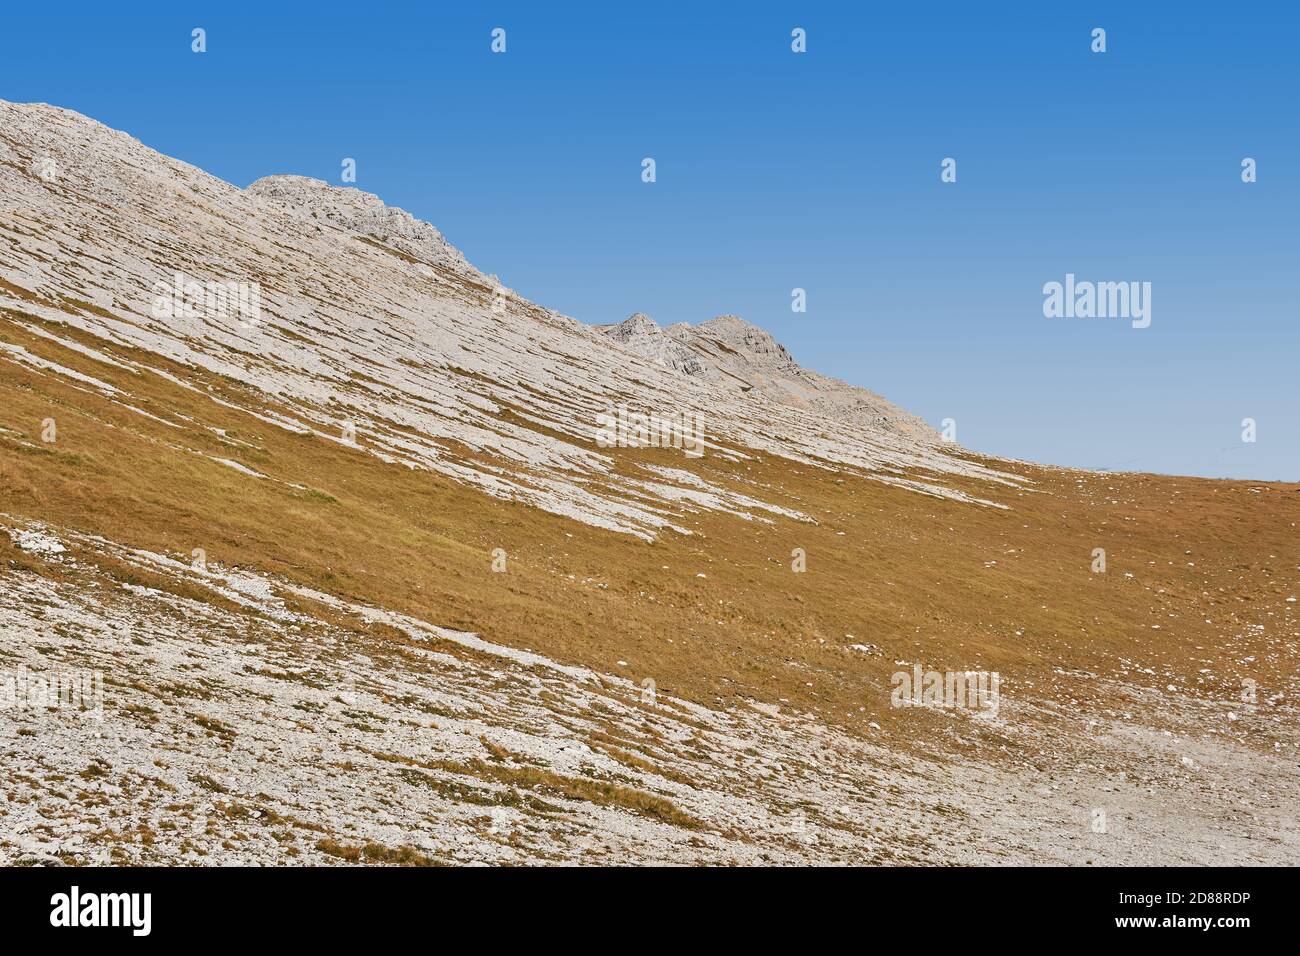 paesaggio desertato - tundra secca di montagna su un altopiano in una giornata limpida Foto Stock